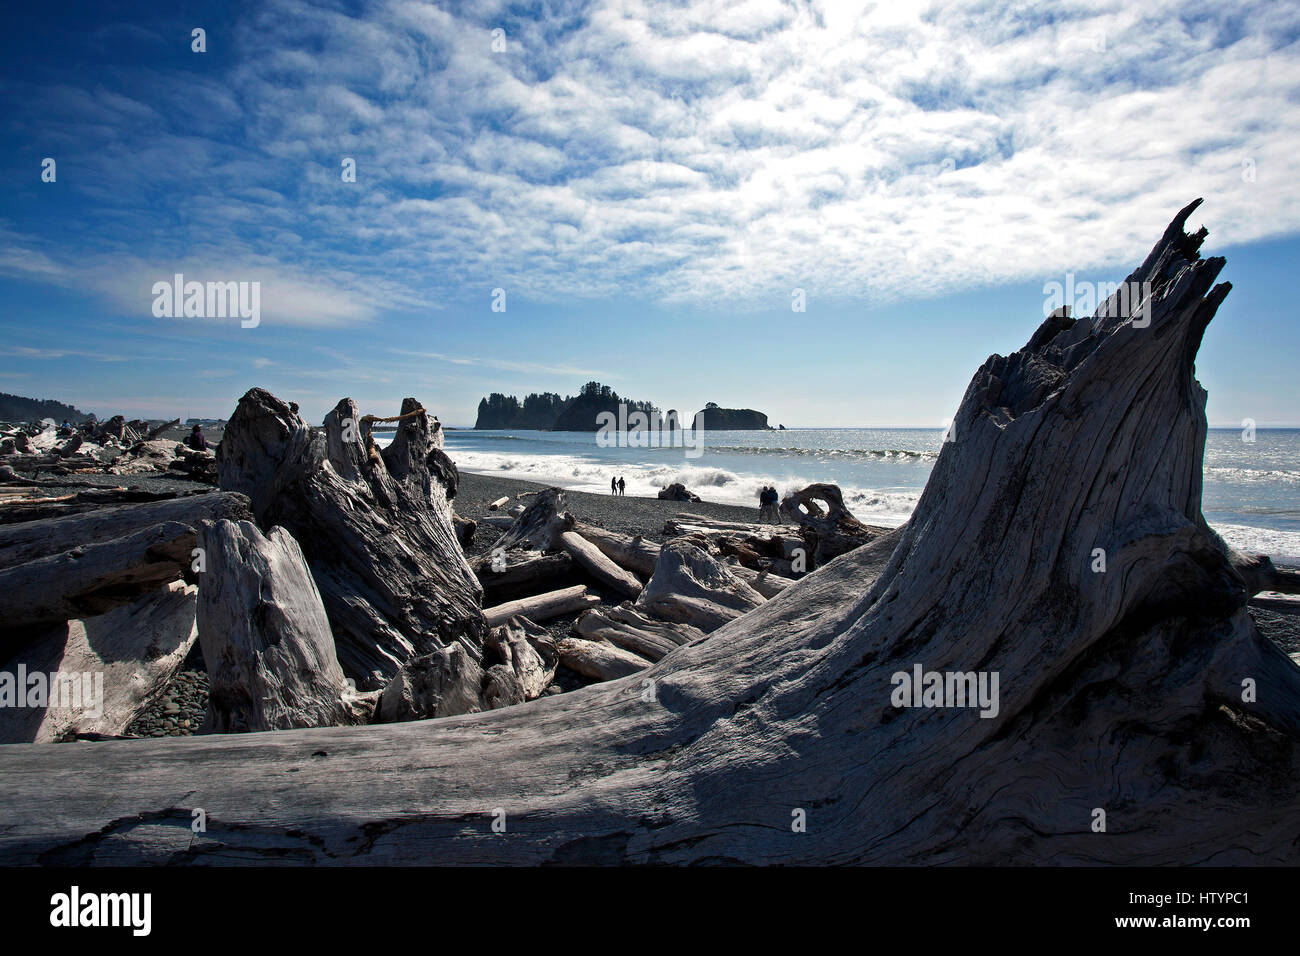 Driftwood at Rialto Beach near La Push, Forks, Olympic National Park, Washington, USA Stock Photo